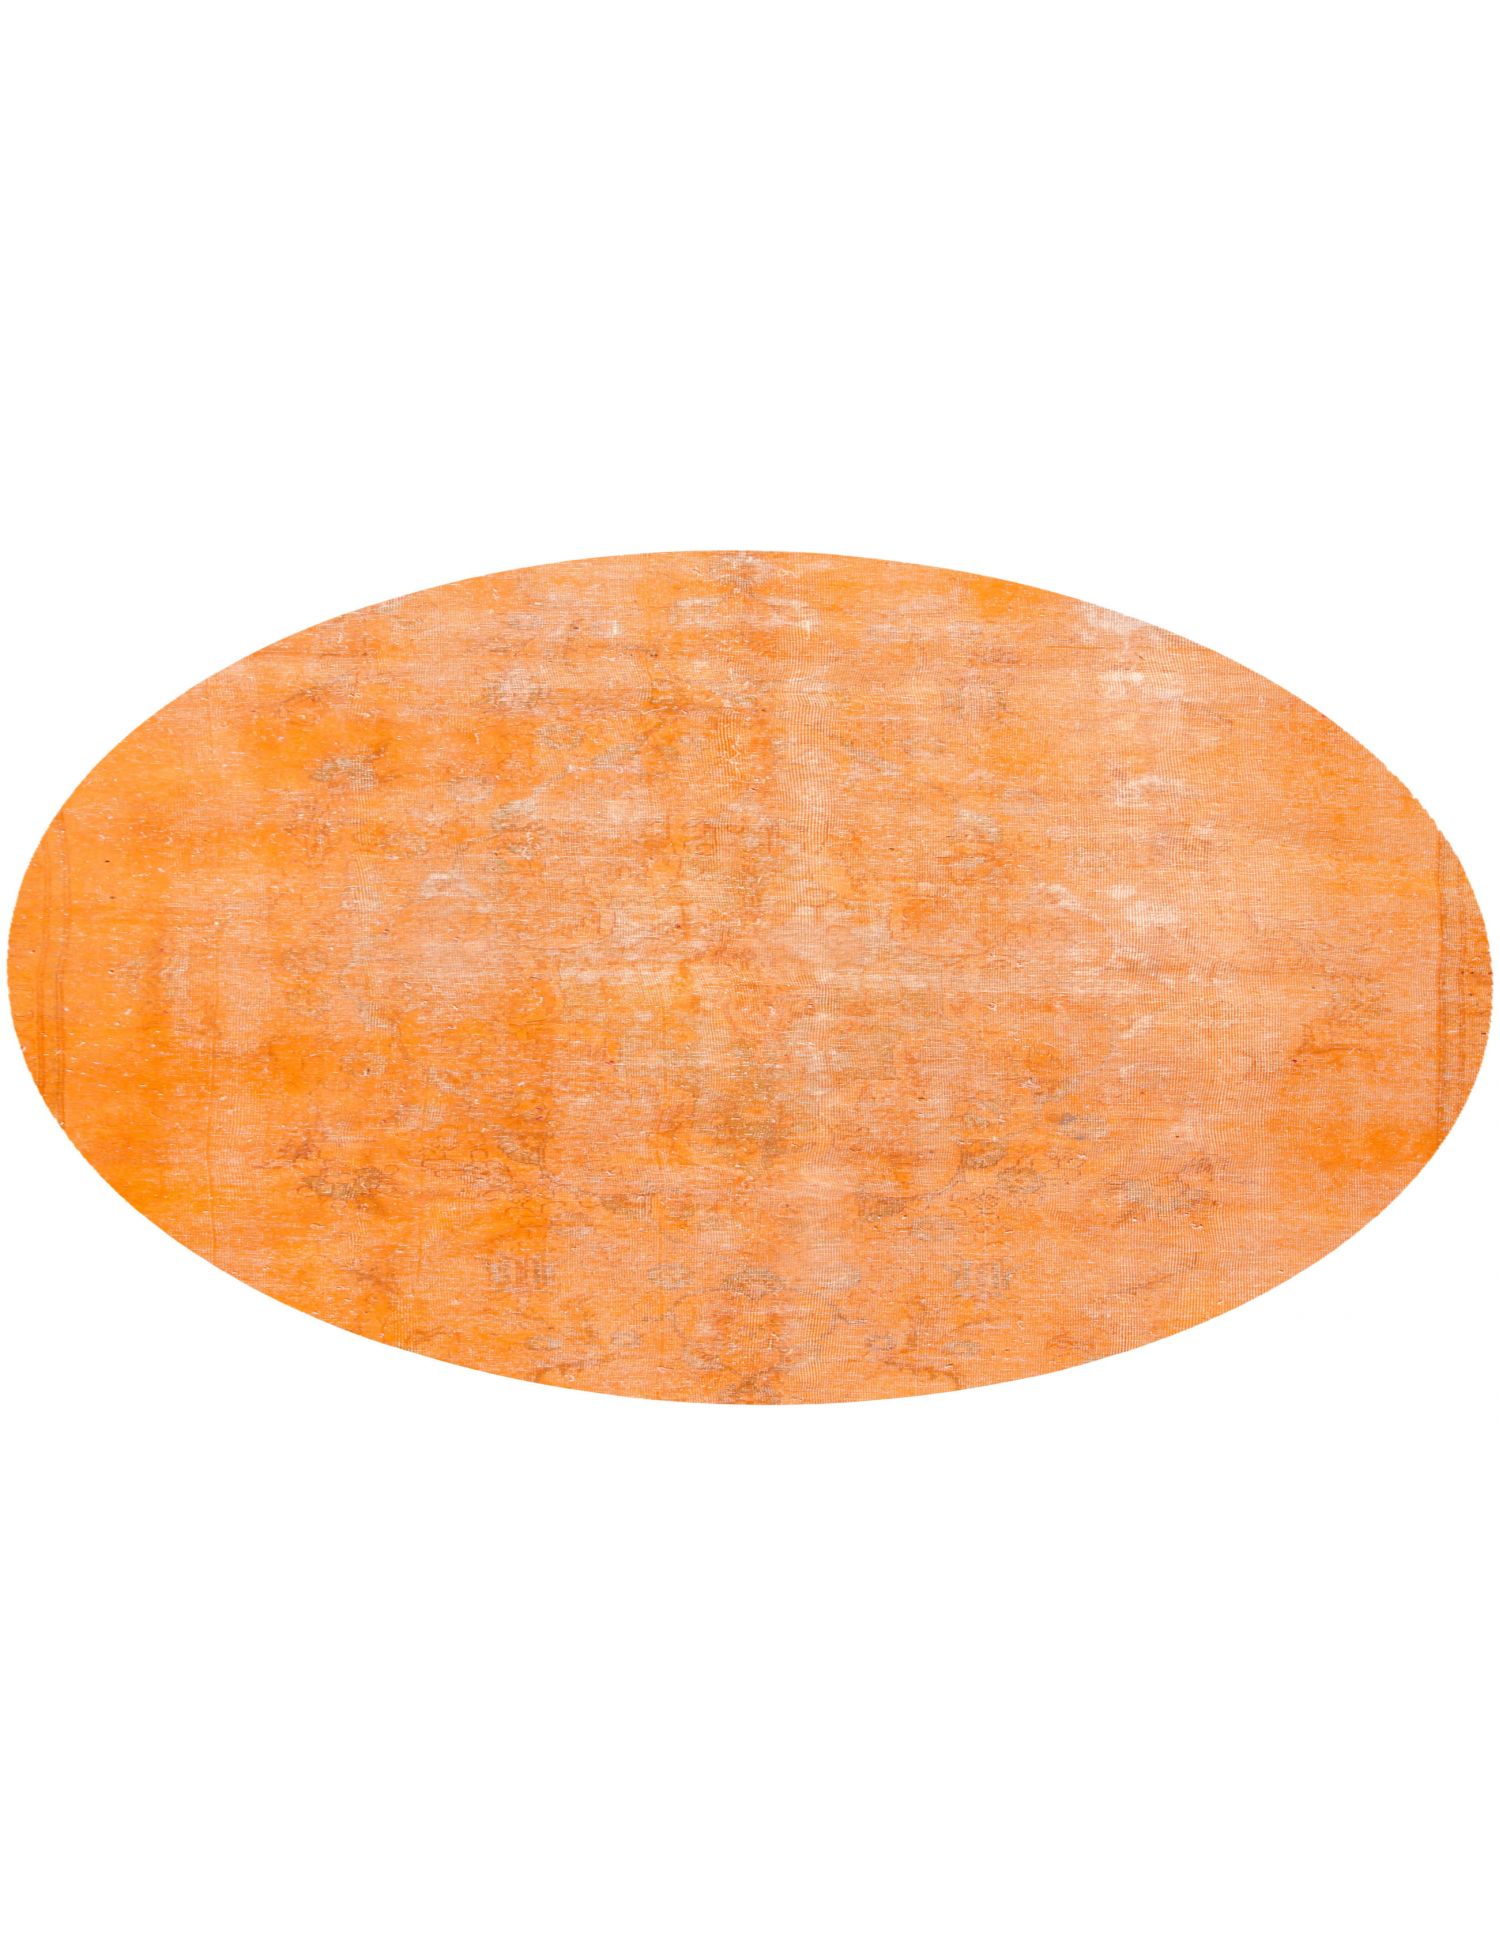 Rund  Vintage Teppich  orange <br/>224 x 224 cm